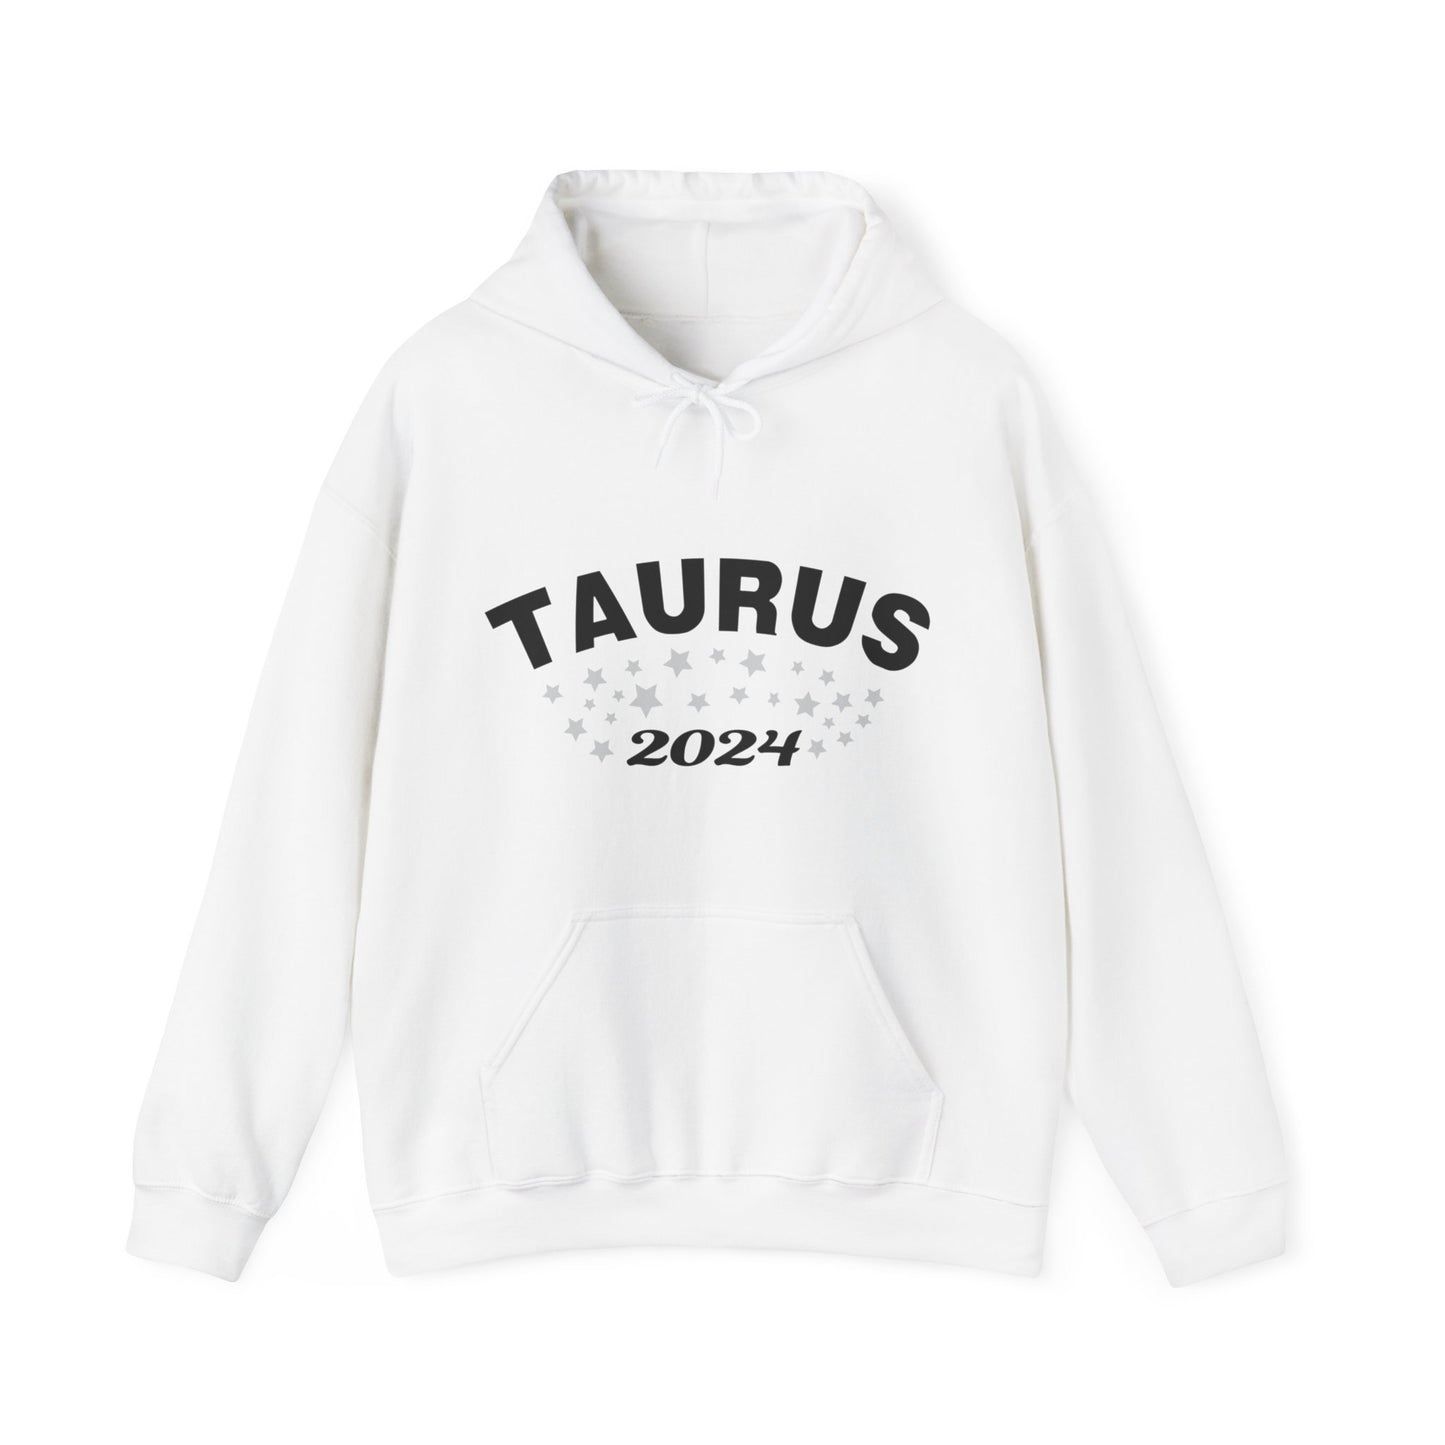 Taurus Hoodie 2024